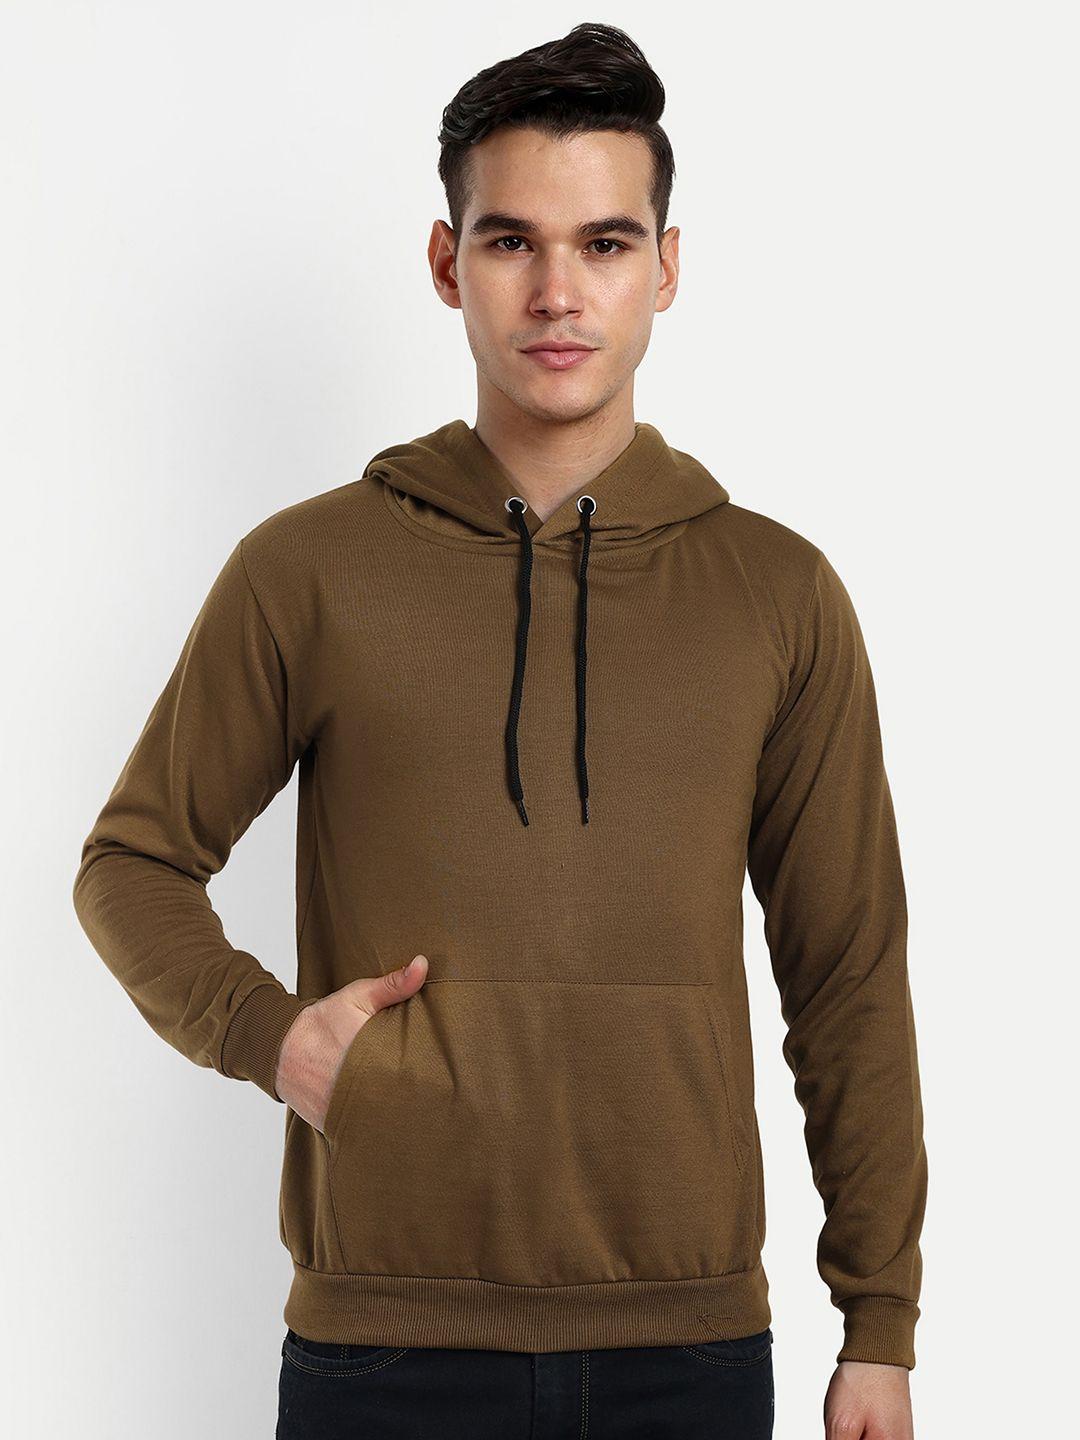 divra clothing unisex hooded fleece sweatshirt